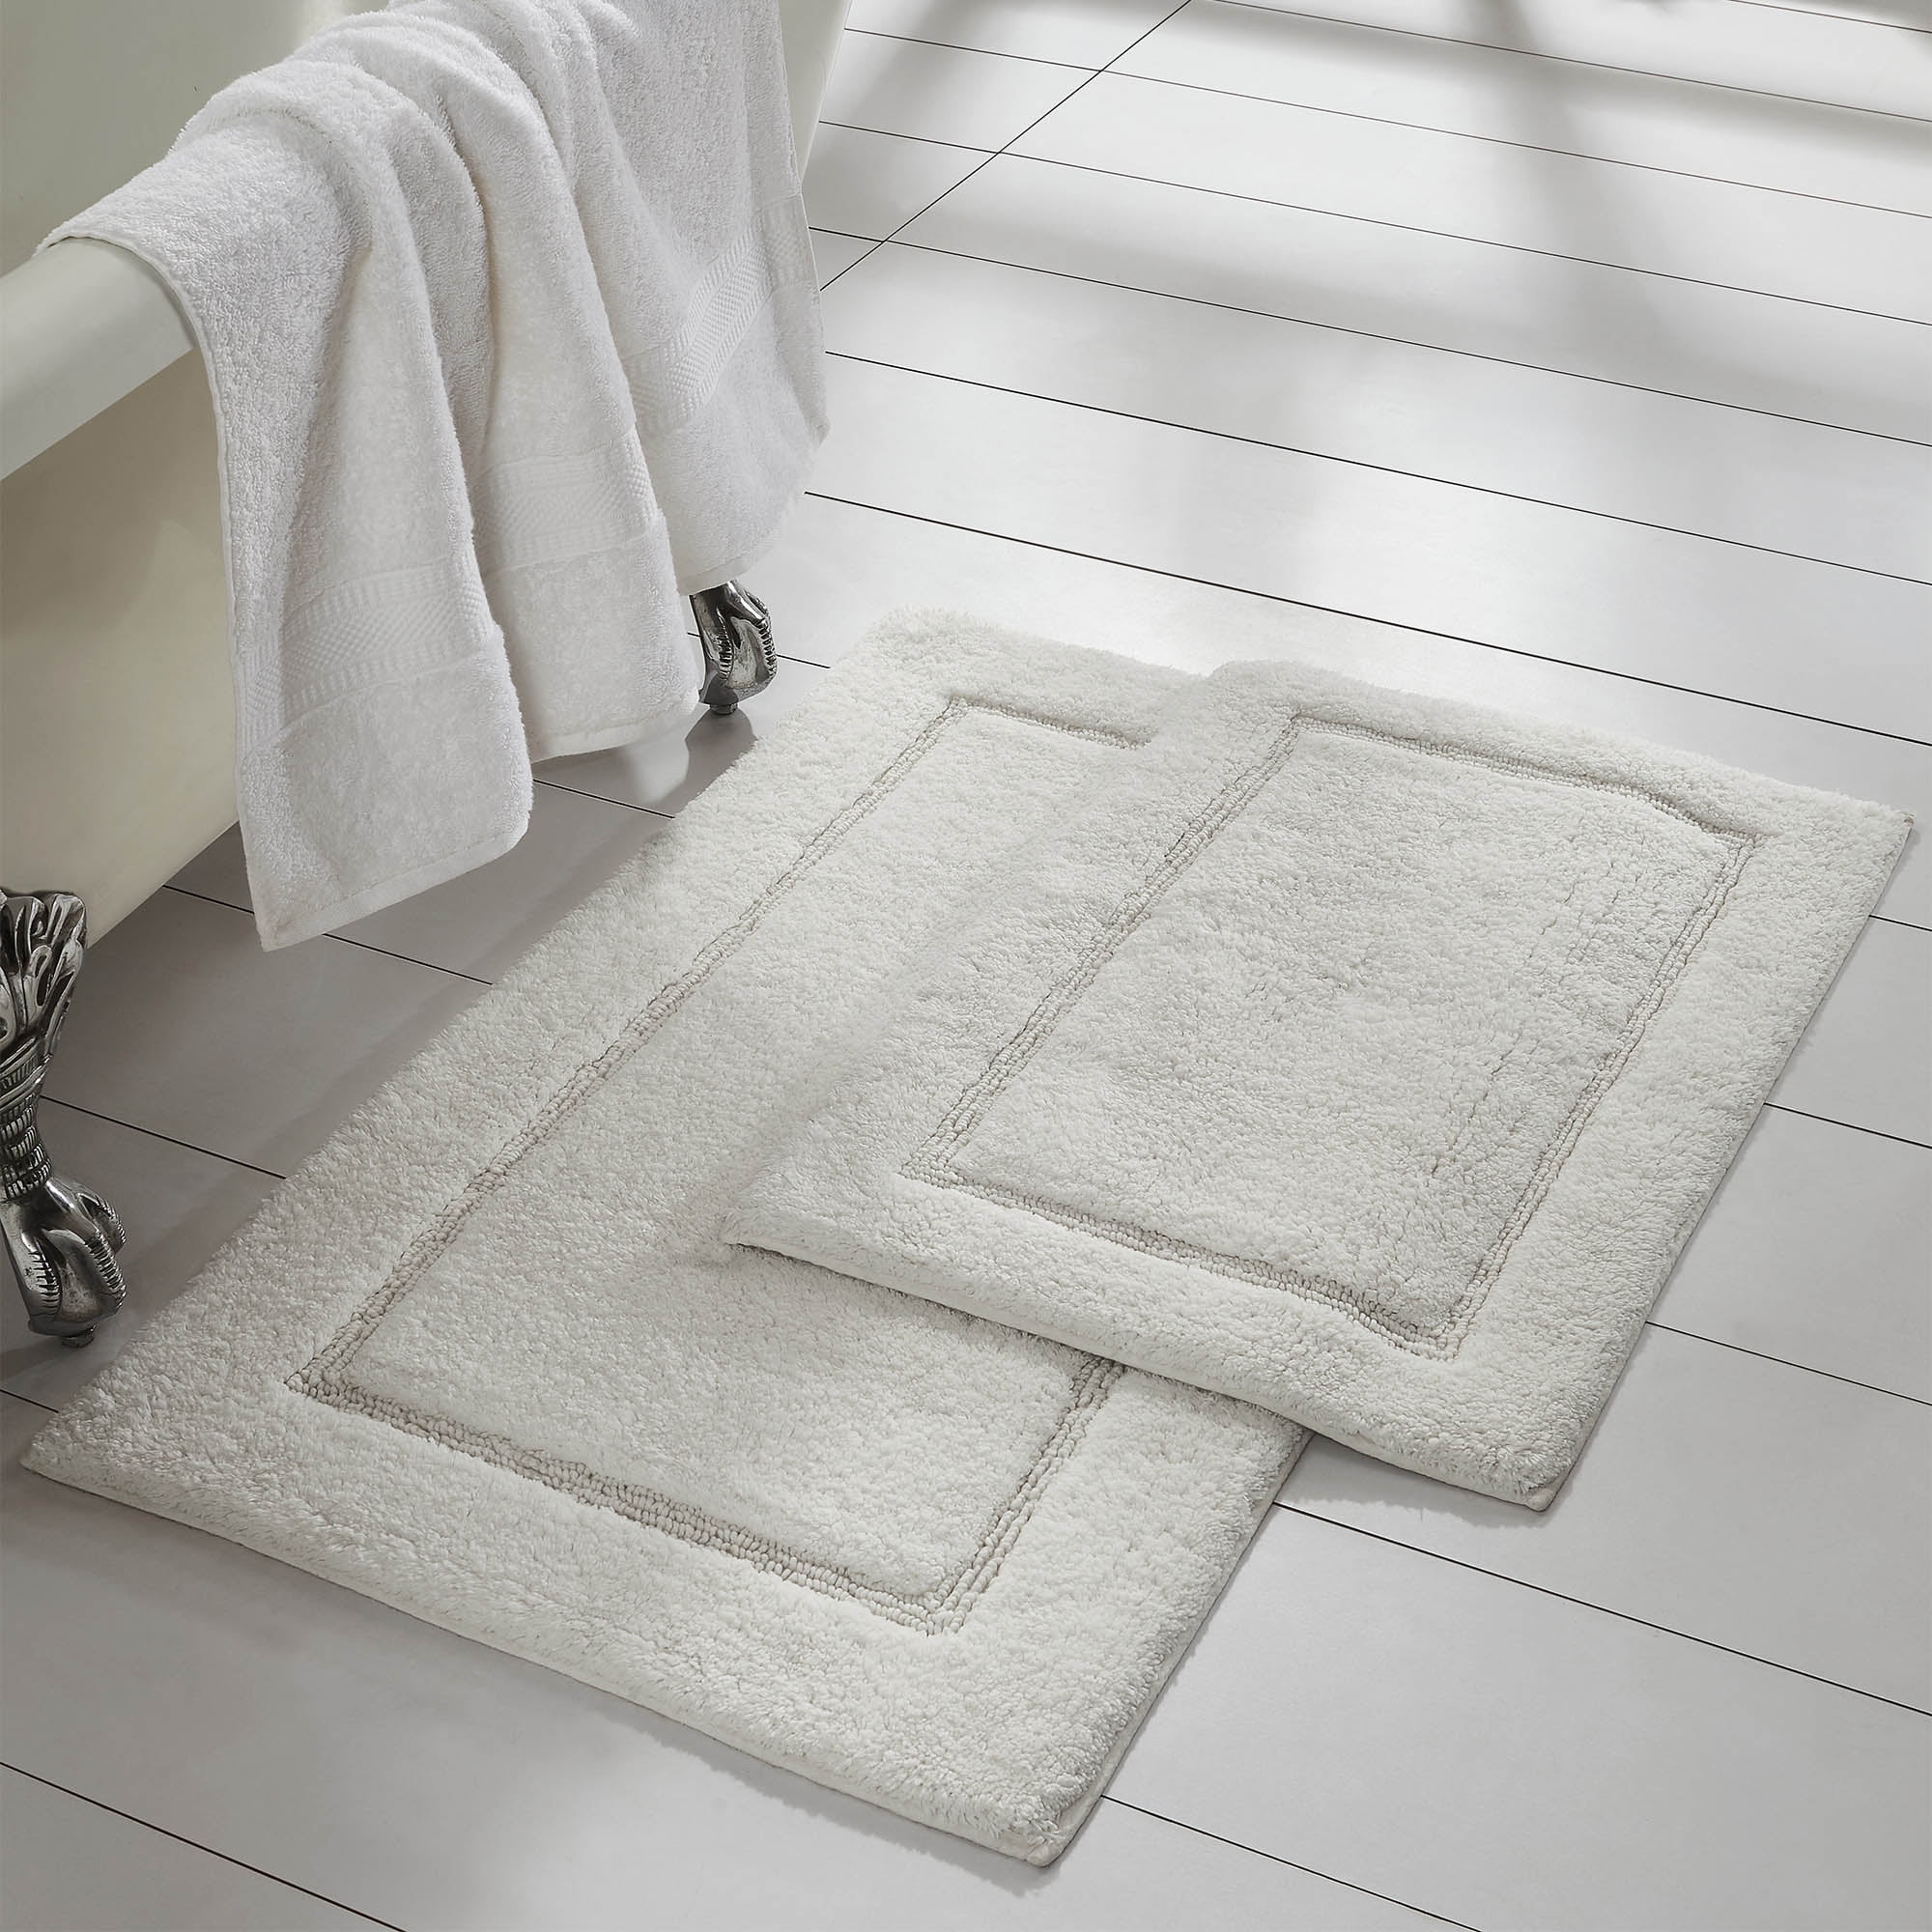 White bath rug